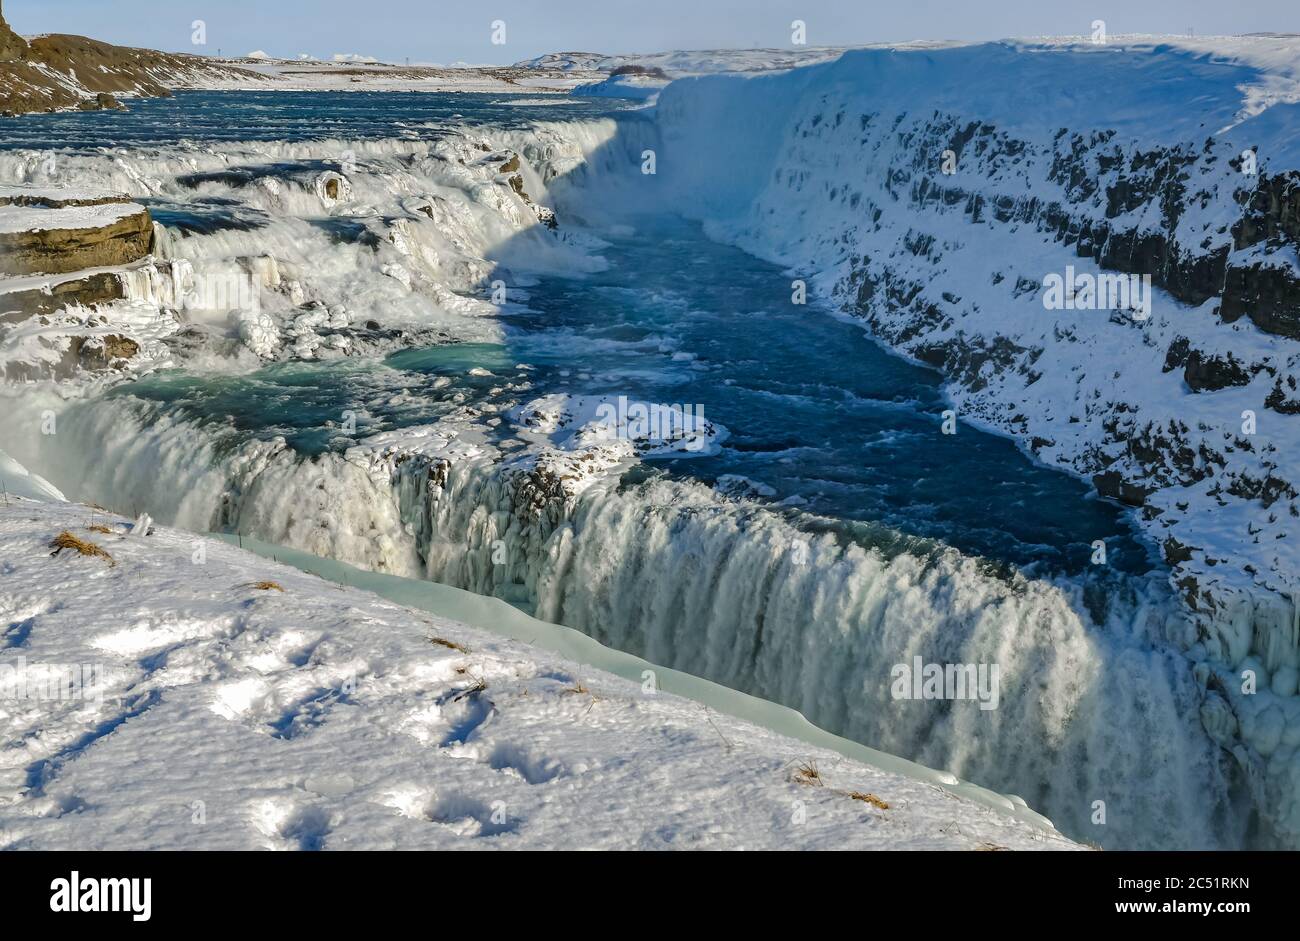 Point de vue surplombant les cascades de la rivière à Gullfoss chutes d'eau attraction touristique en hiver avec neige et glace, cercle d'or, Islande Banque D'Images